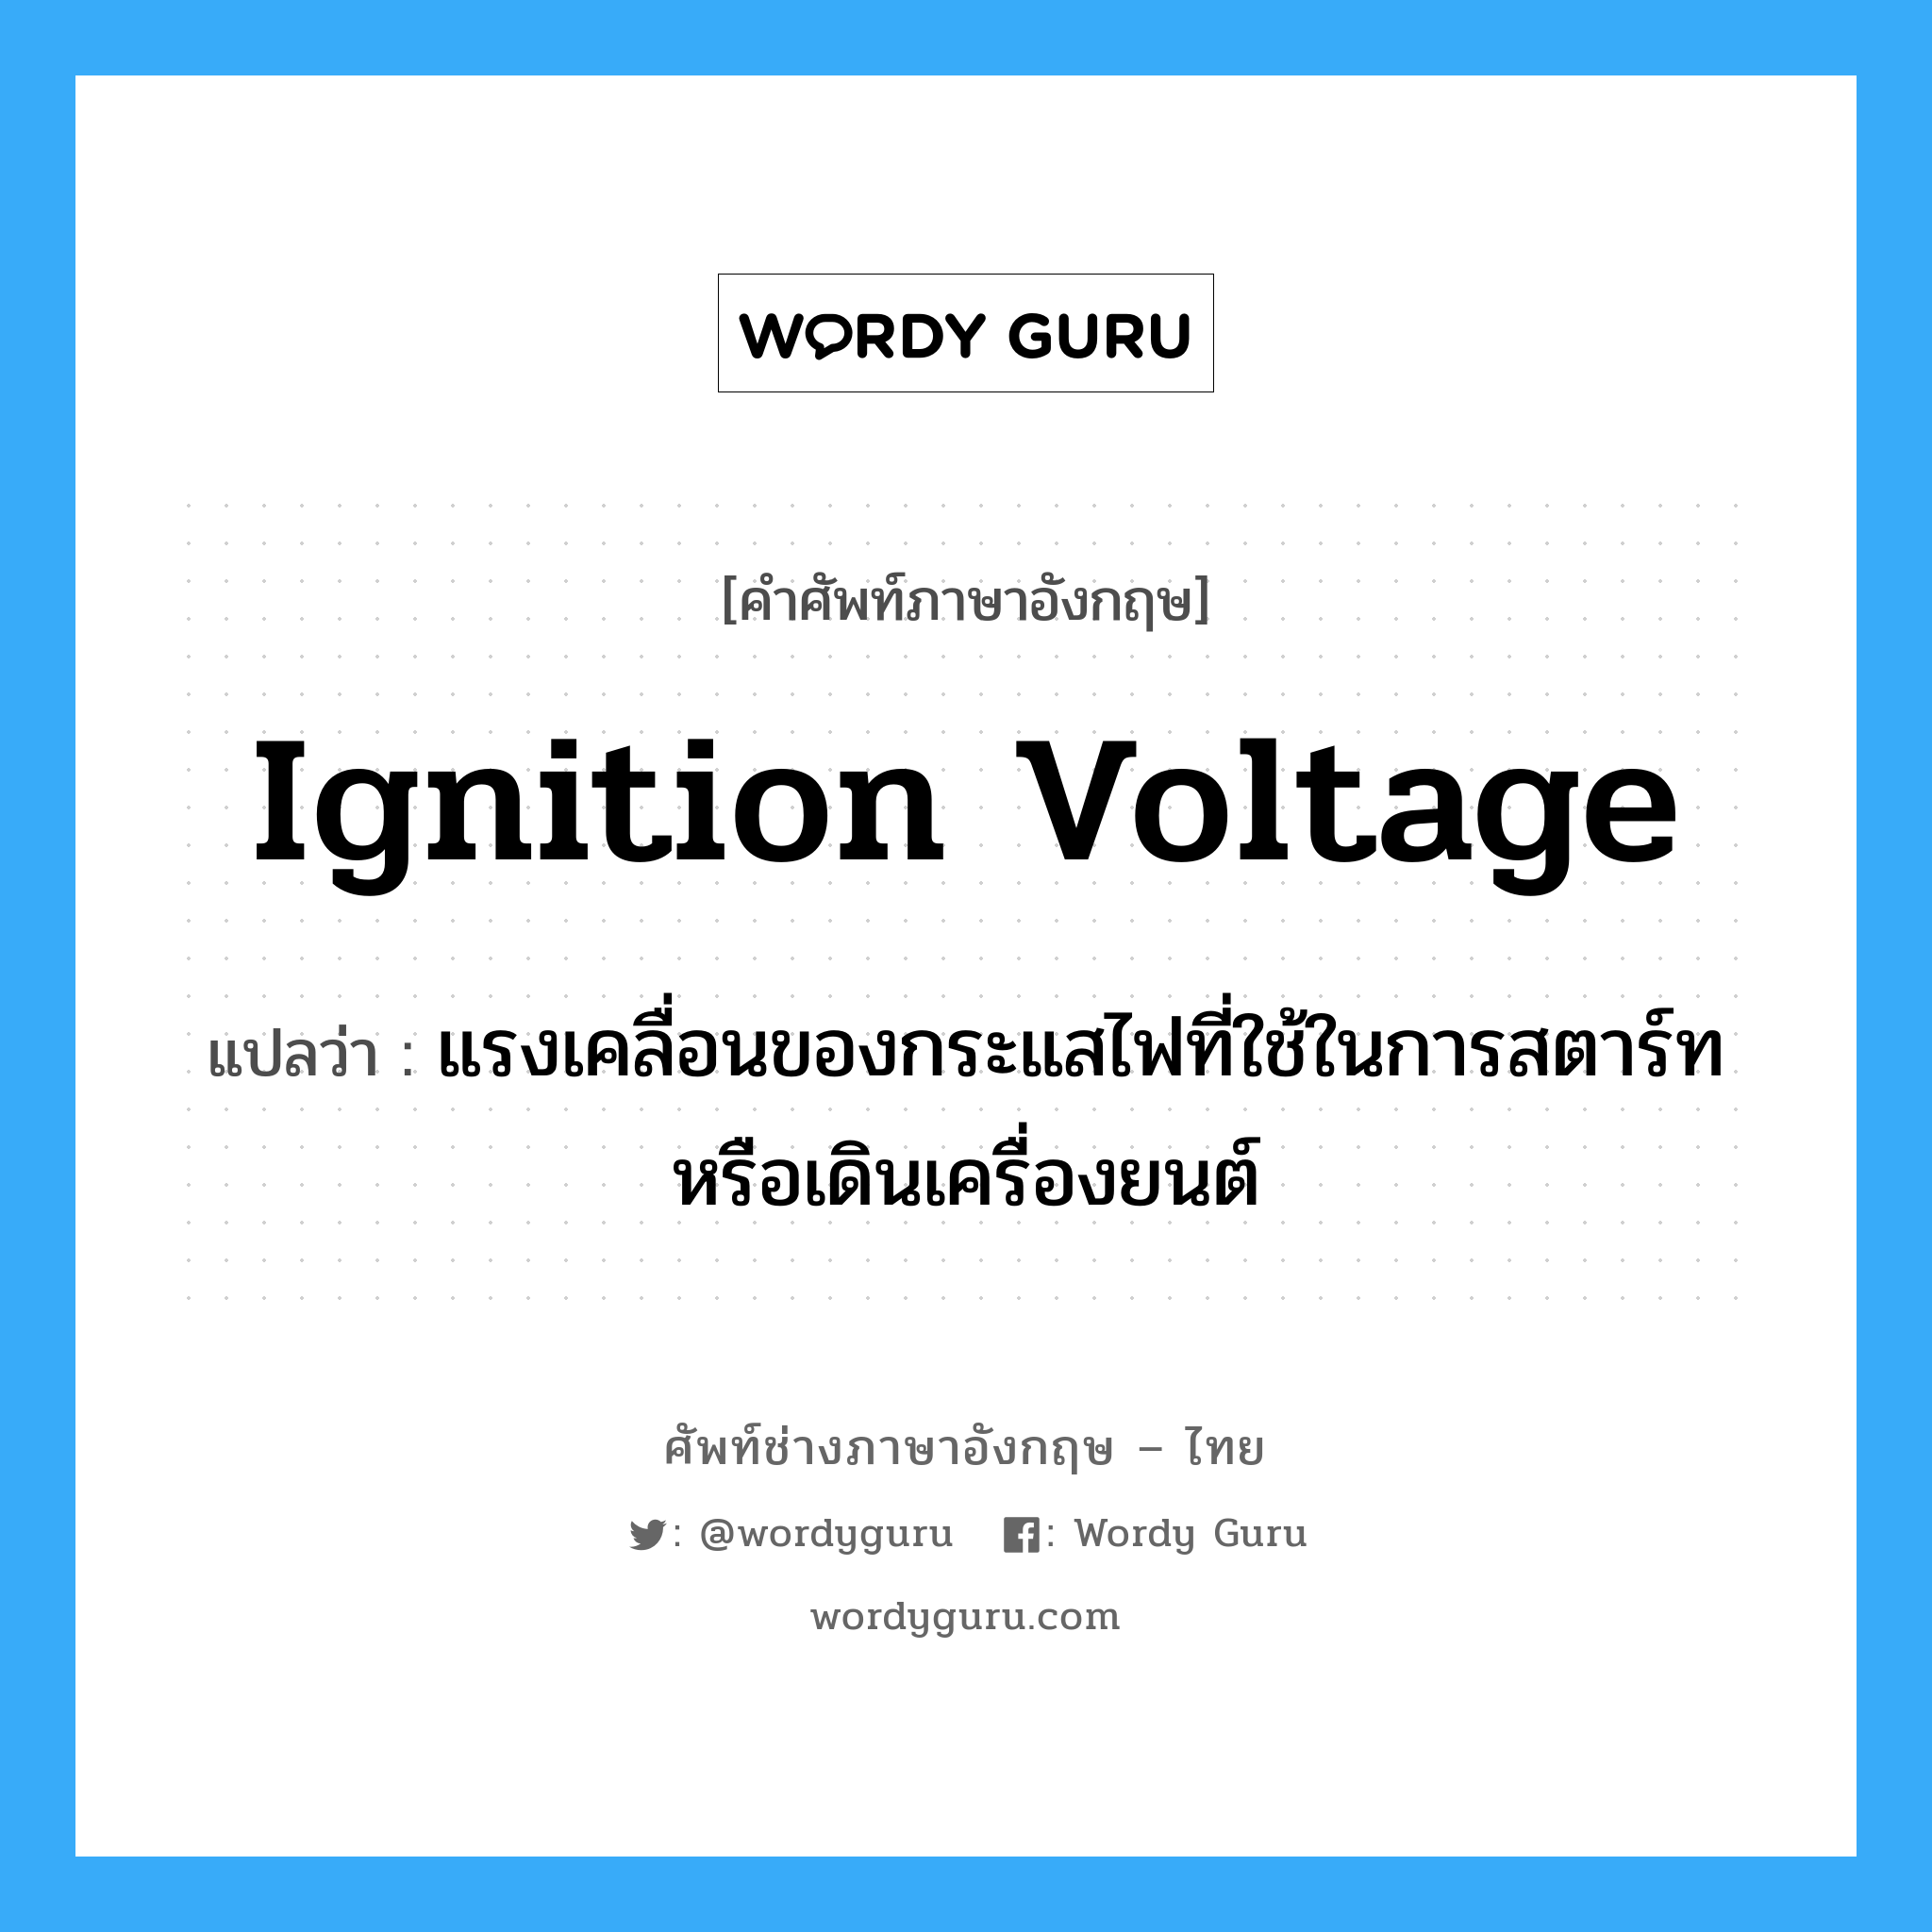 ignition voltage แปลว่า?, คำศัพท์ช่างภาษาอังกฤษ - ไทย ignition voltage คำศัพท์ภาษาอังกฤษ ignition voltage แปลว่า แรงเคลื่อนของกระแสไฟที่ใช้ในการสตาร์ทหรือเดินเครื่องยนต์